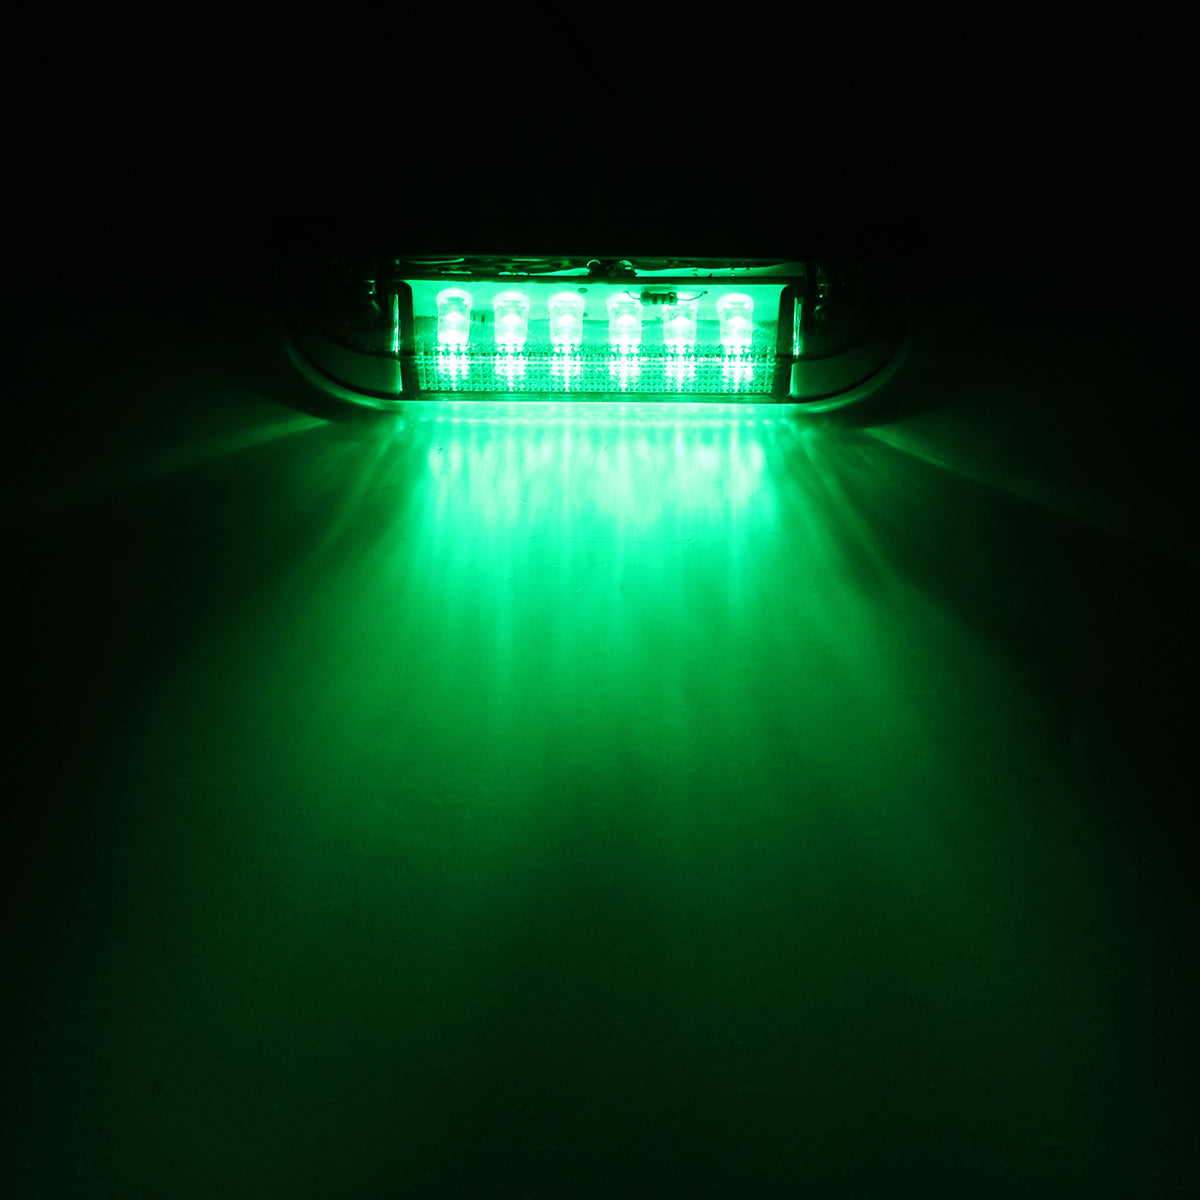 Spring Green 12V 6LED Side Marker Lights Waterproof Utility Strip for Truck Trailer Boat Navigation DC